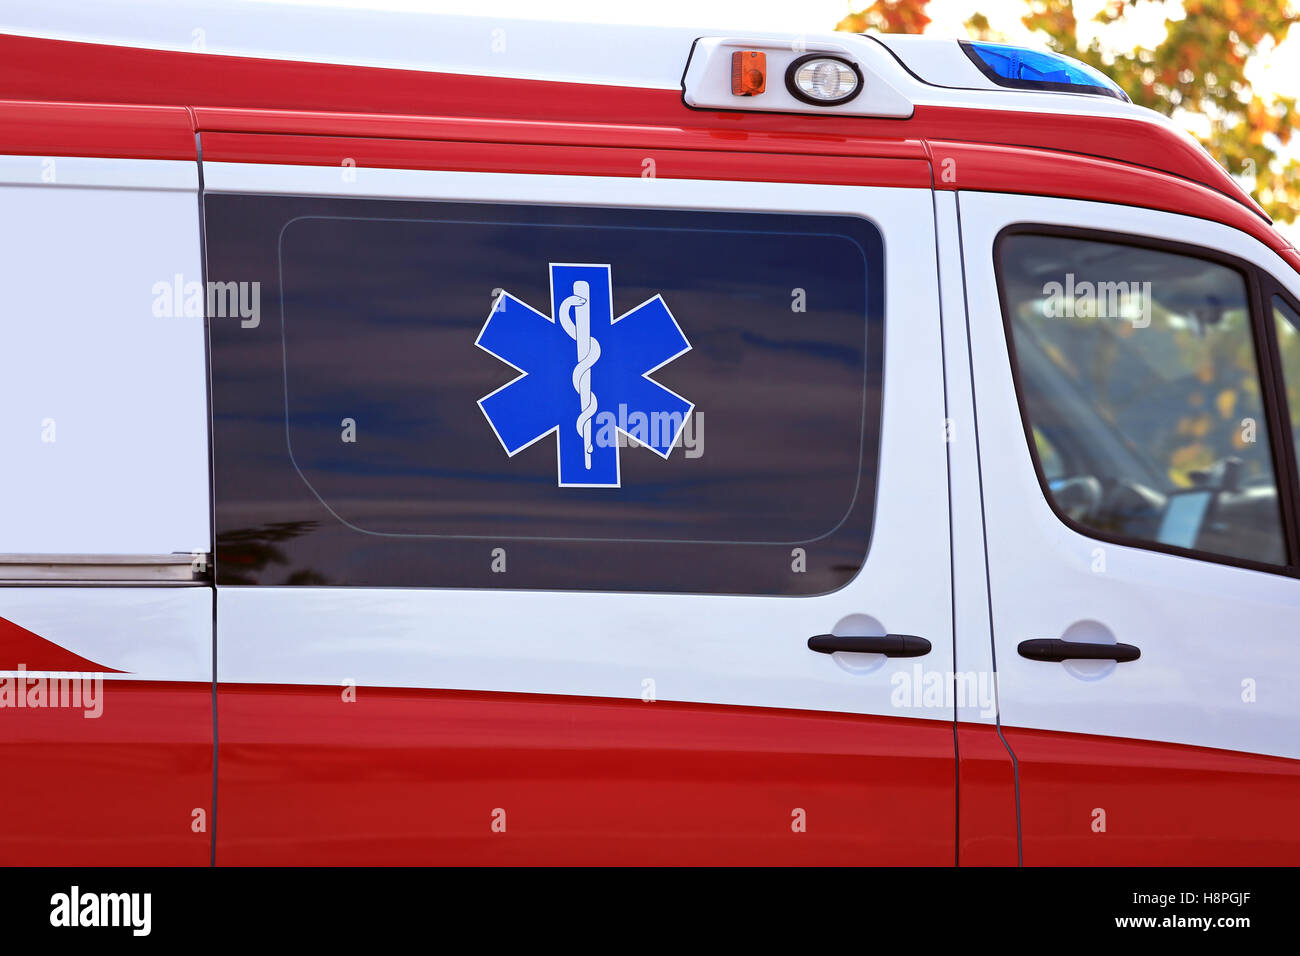 Star of Life, Medical symbol of emergency, on Ambulance emergency vehicle. Stock Photo